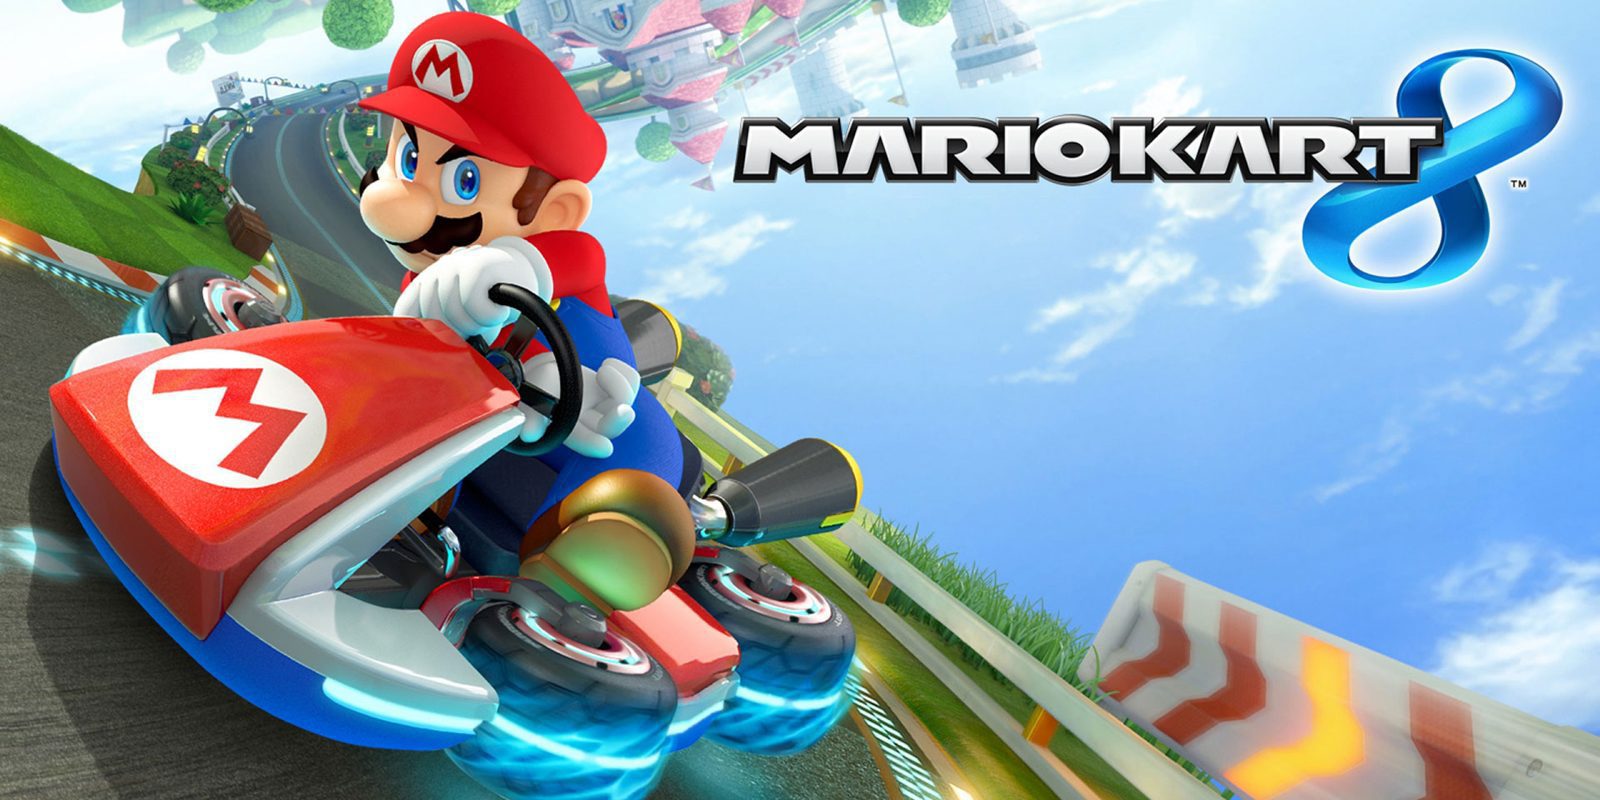 Consiguen aumentar la dificultad de 'Mario Kart 8' gracias a un nuevo mod